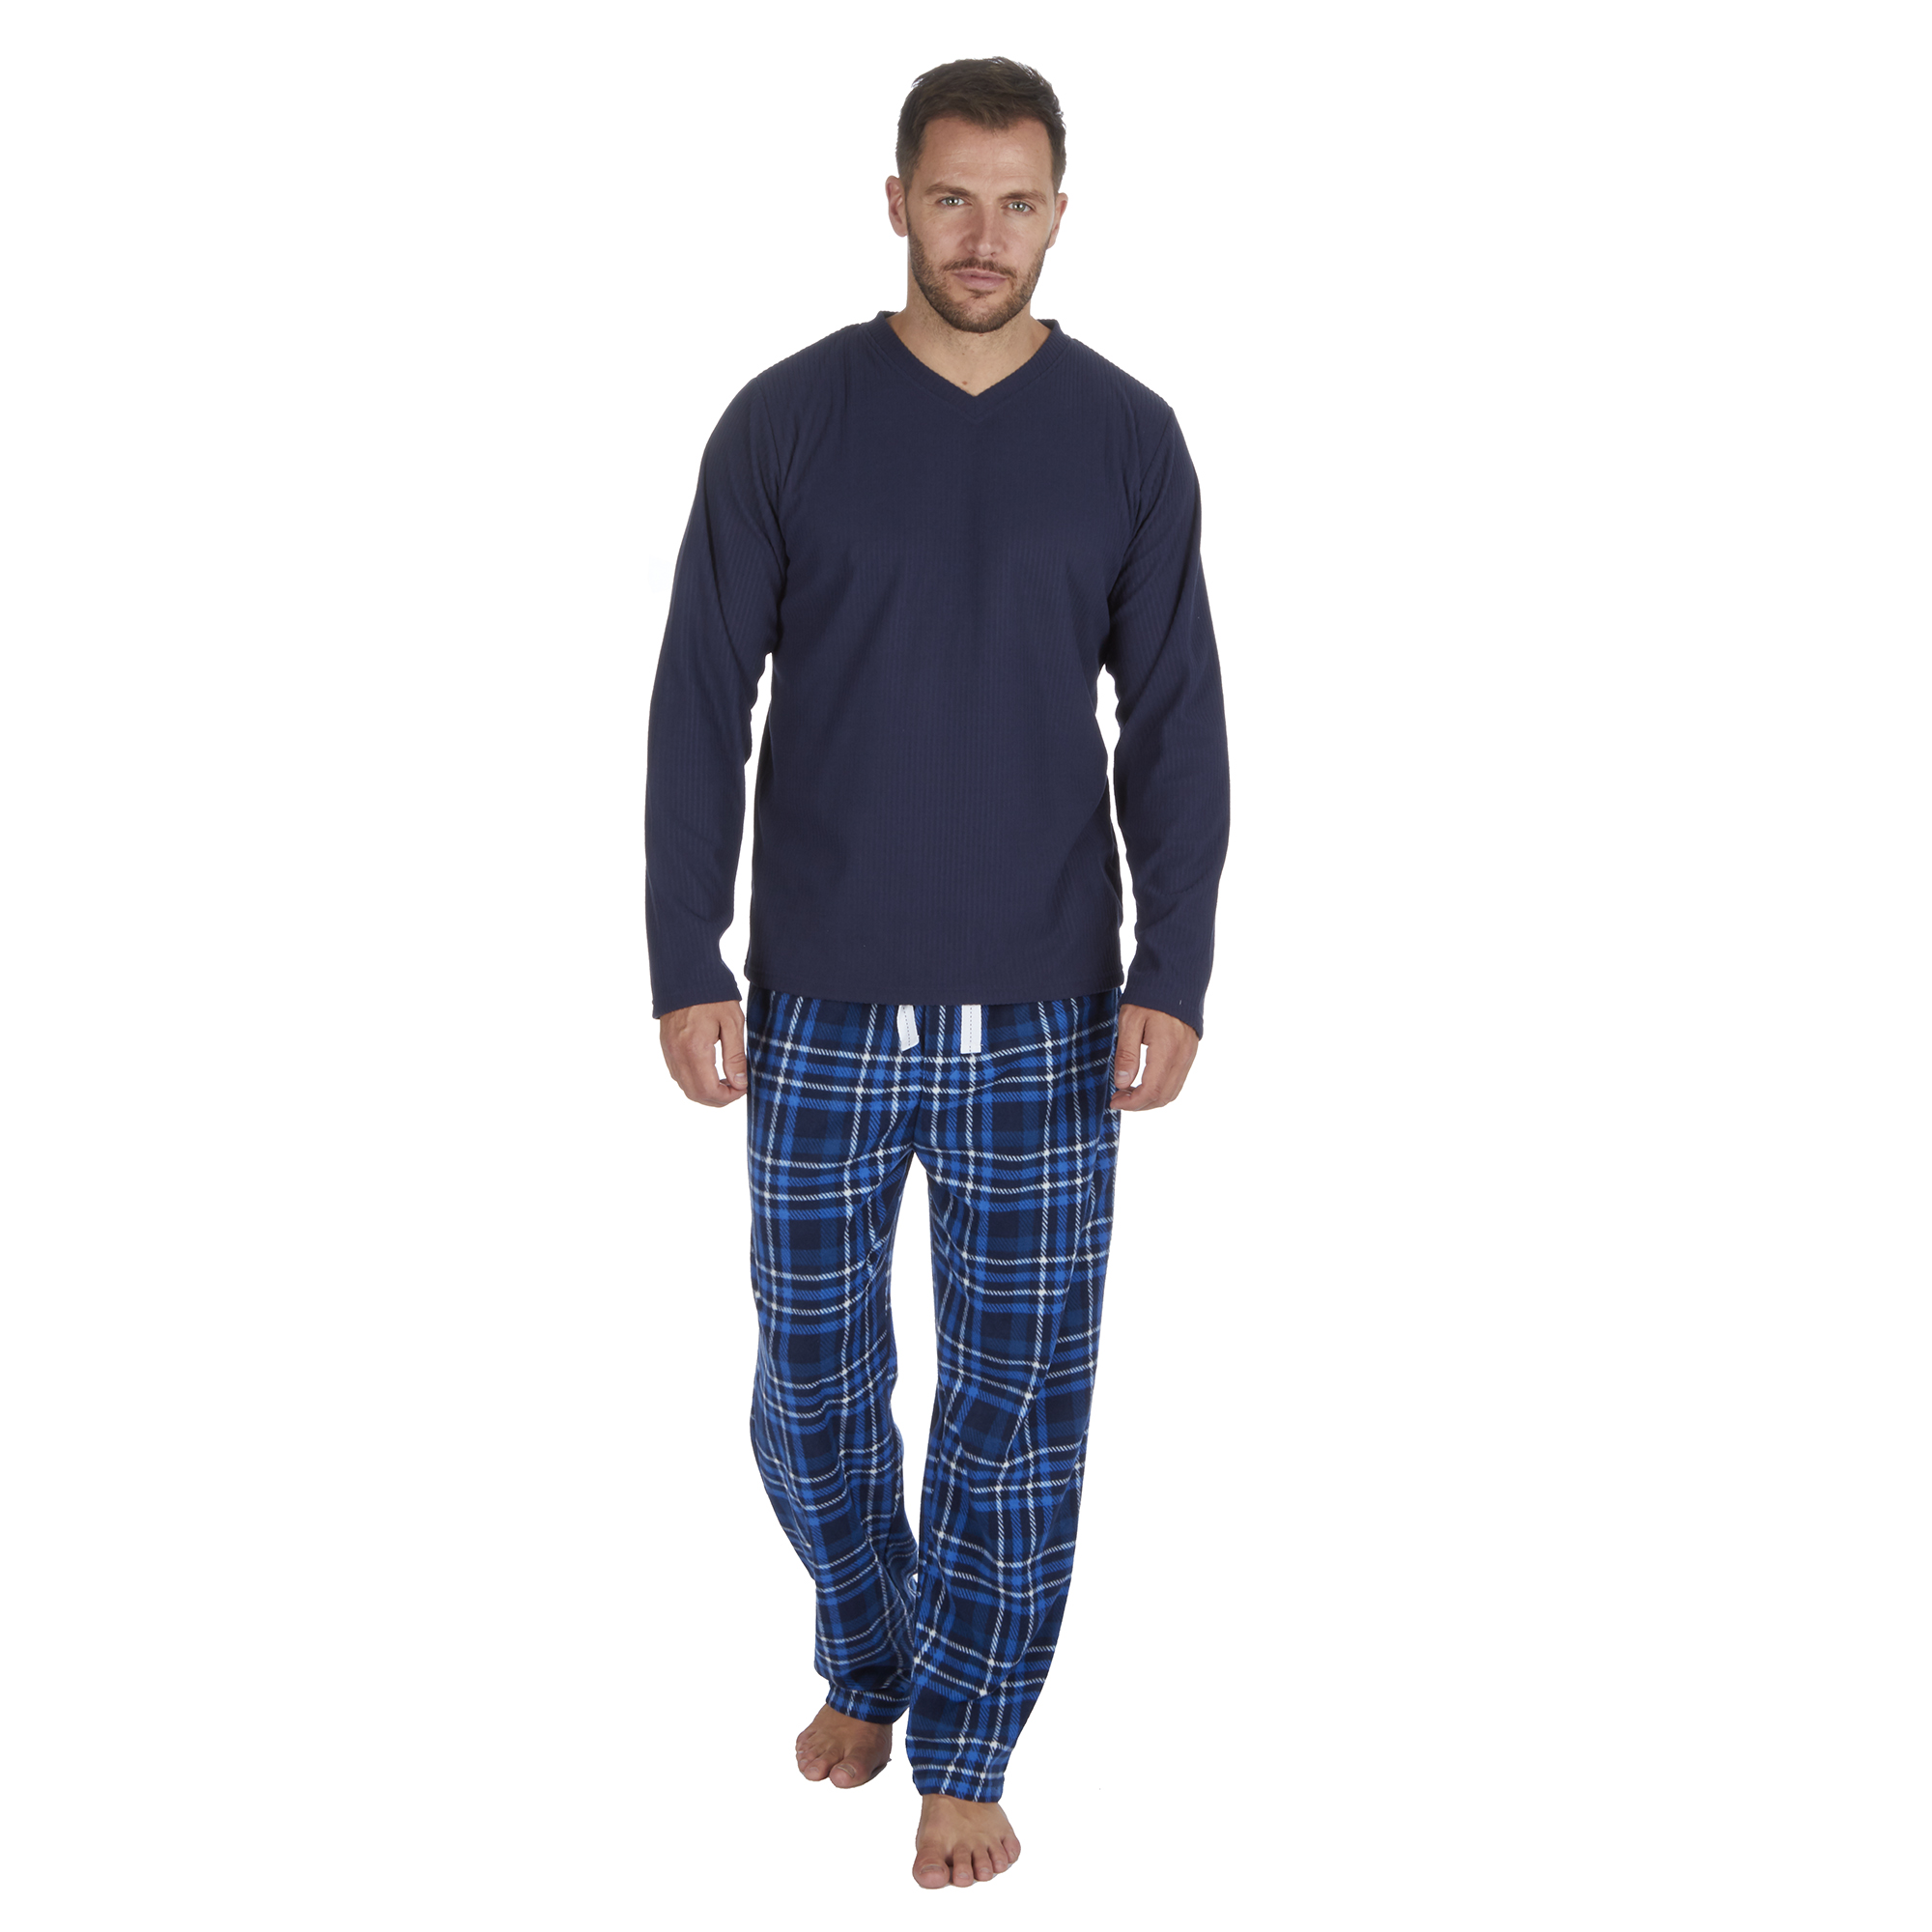 Mens Warm Soft Microfleece Checked Pyjamas Pajamas PJ Set Long Sleeve S ...